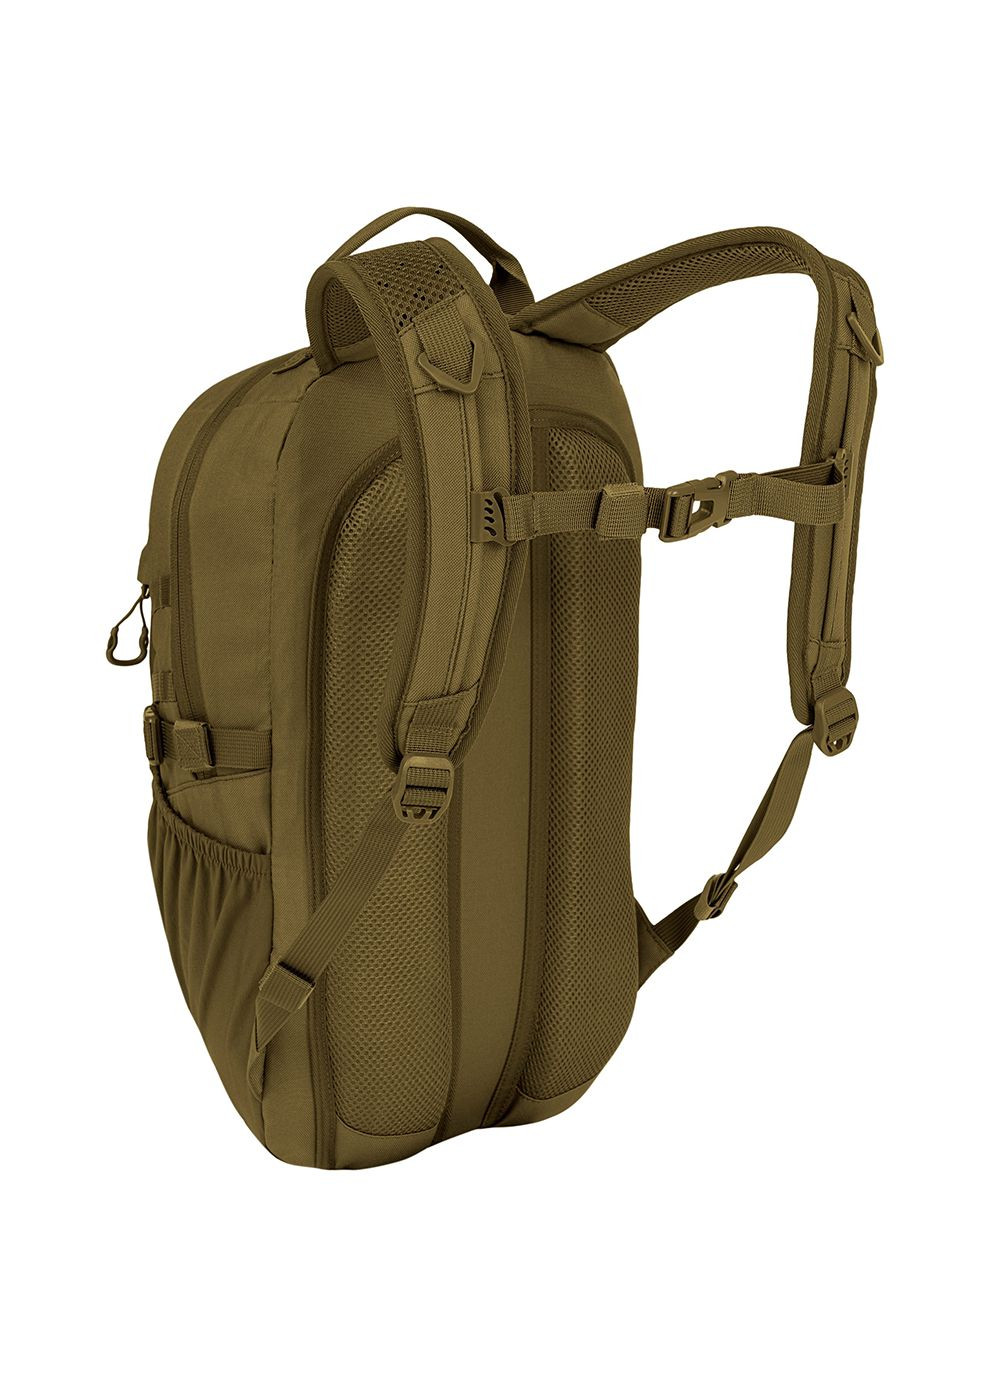 Рюкзак тактический Eagle 1 Backpack 20L Coyote Tan Highlander (268832170)